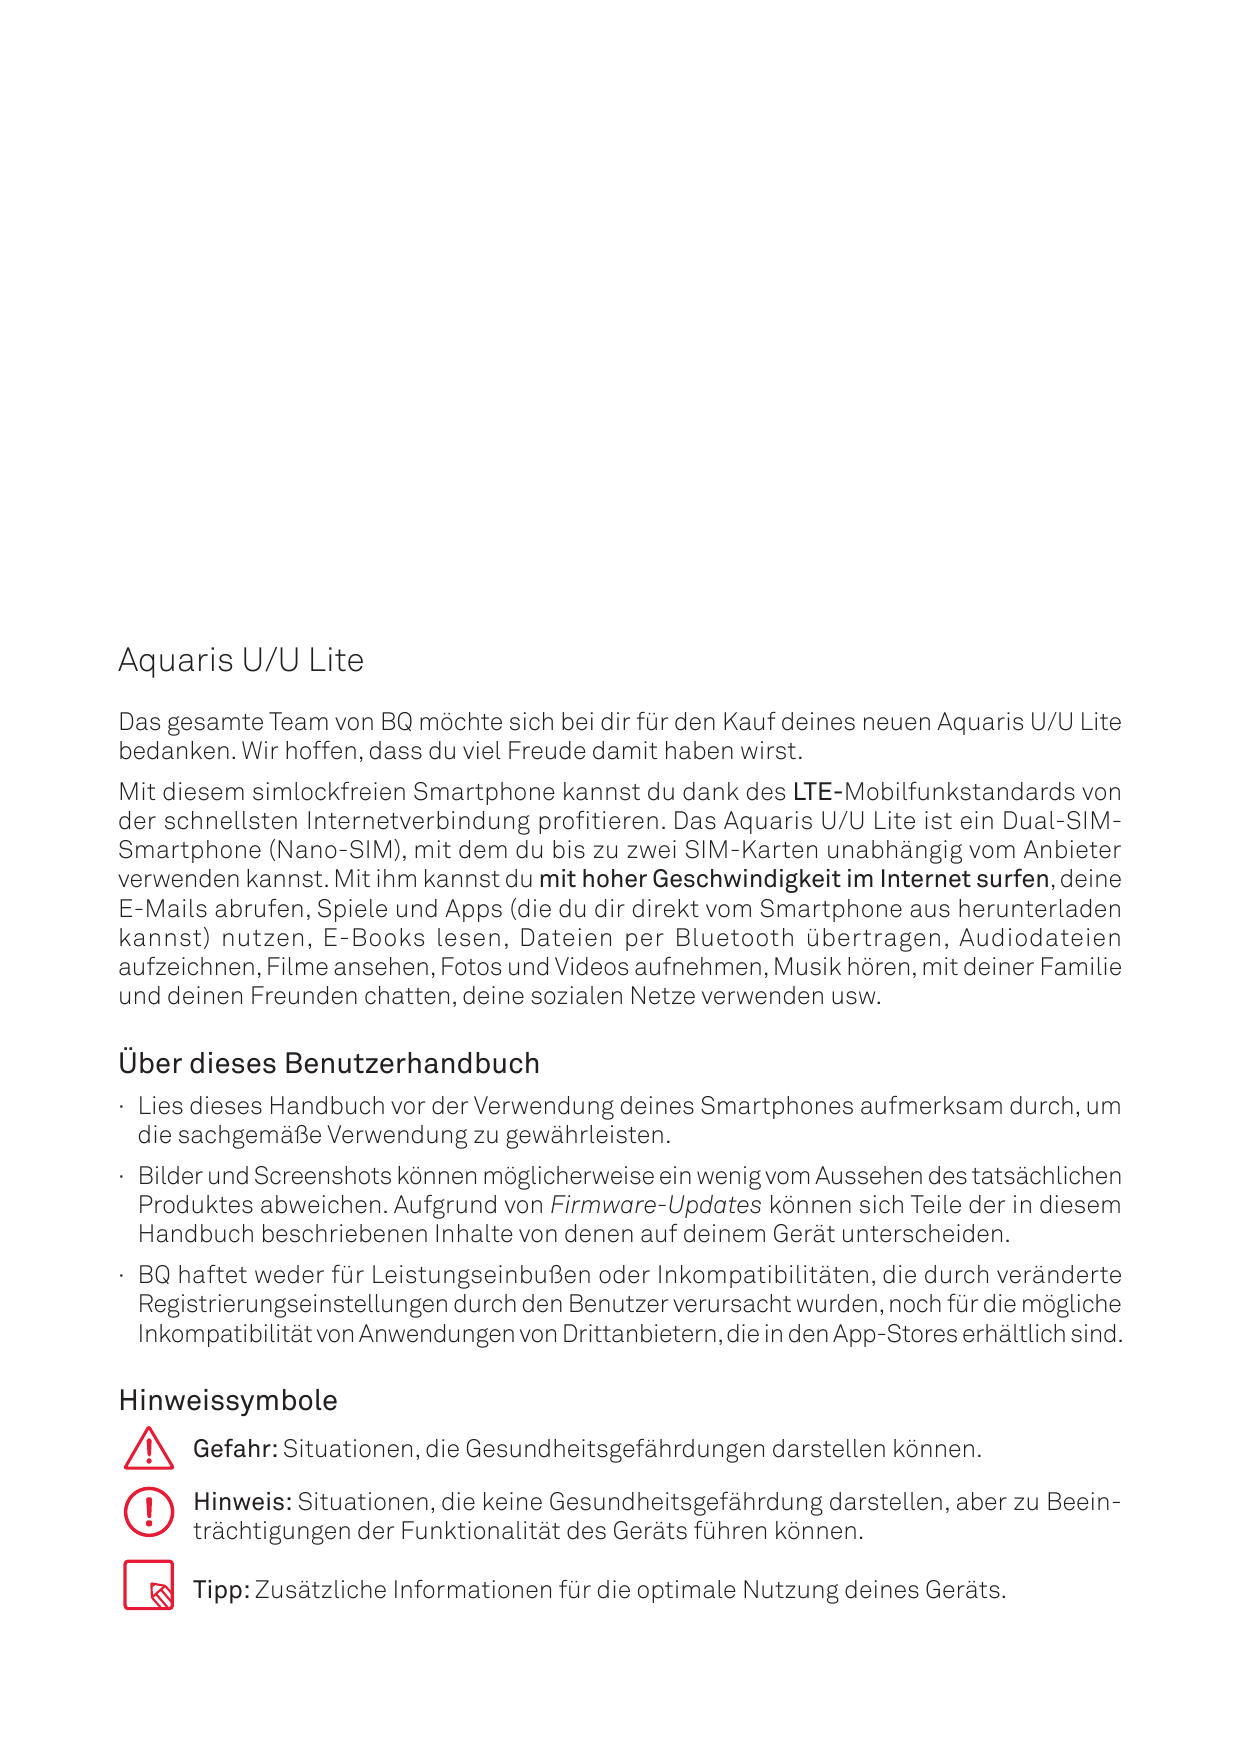 Aquaris U/U LiteDas gesamte Team von BQ möchte sich bei dir für den Kauf deines neuen Aquaris U/U Litebedanken. Wir hoffen, dass